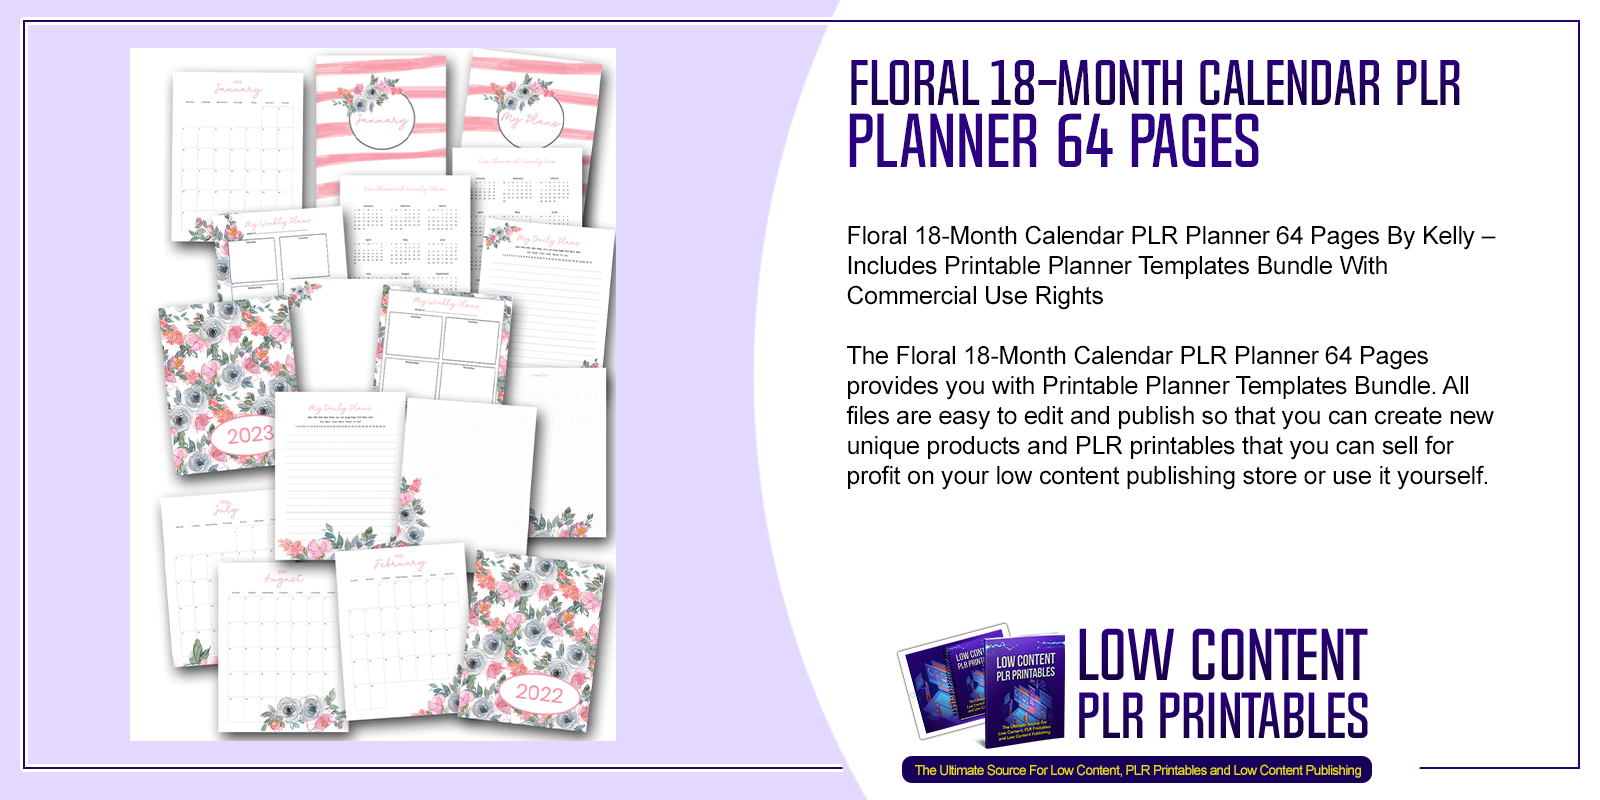 Floral 18 Month Calendar PLR Planner 64 Pages